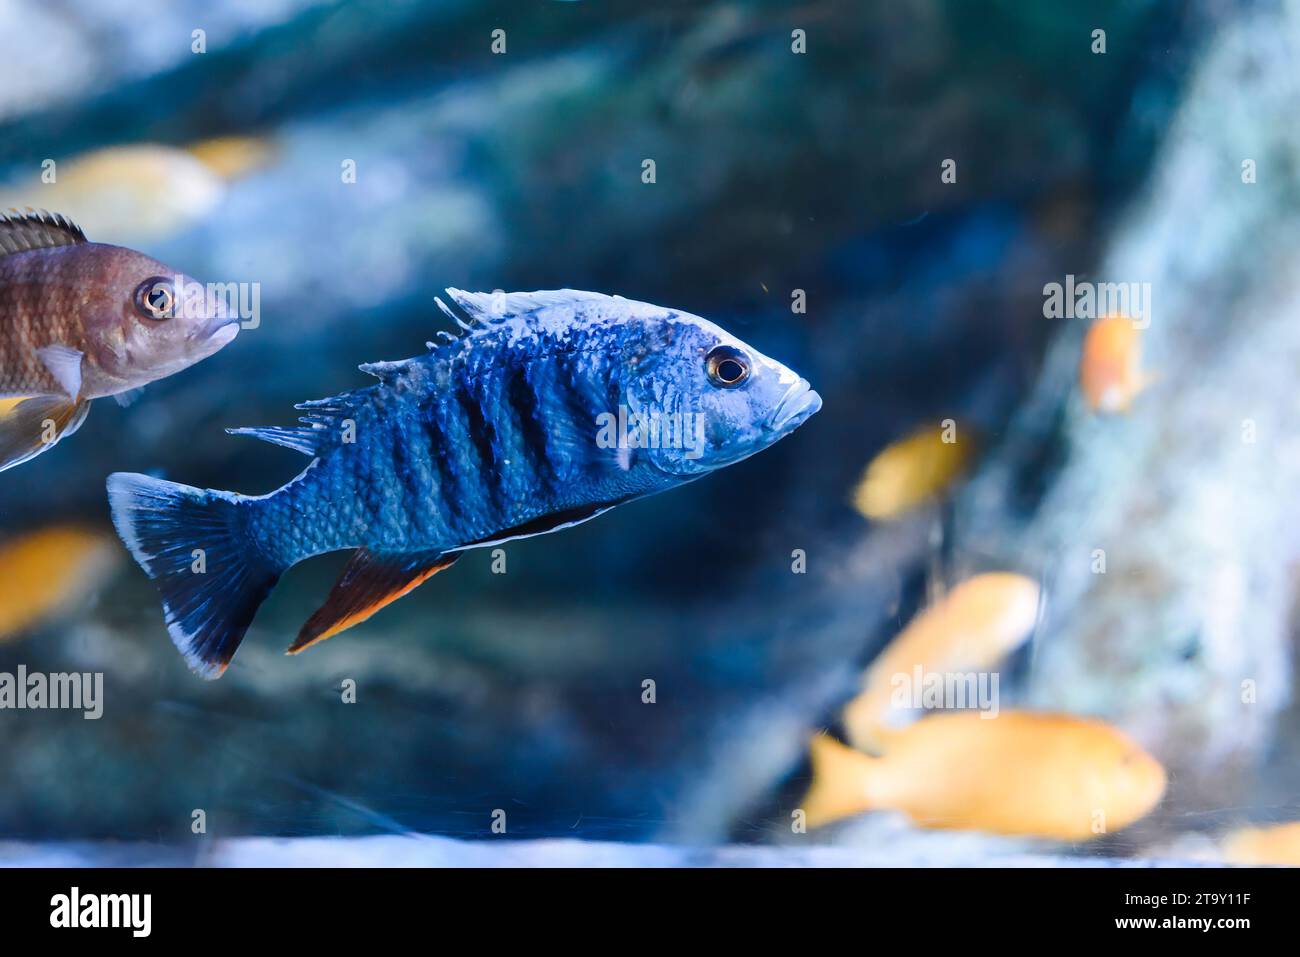 The electric blue hap (Sciaenochromis ahli) in aquarium in Thailand Stock Photo